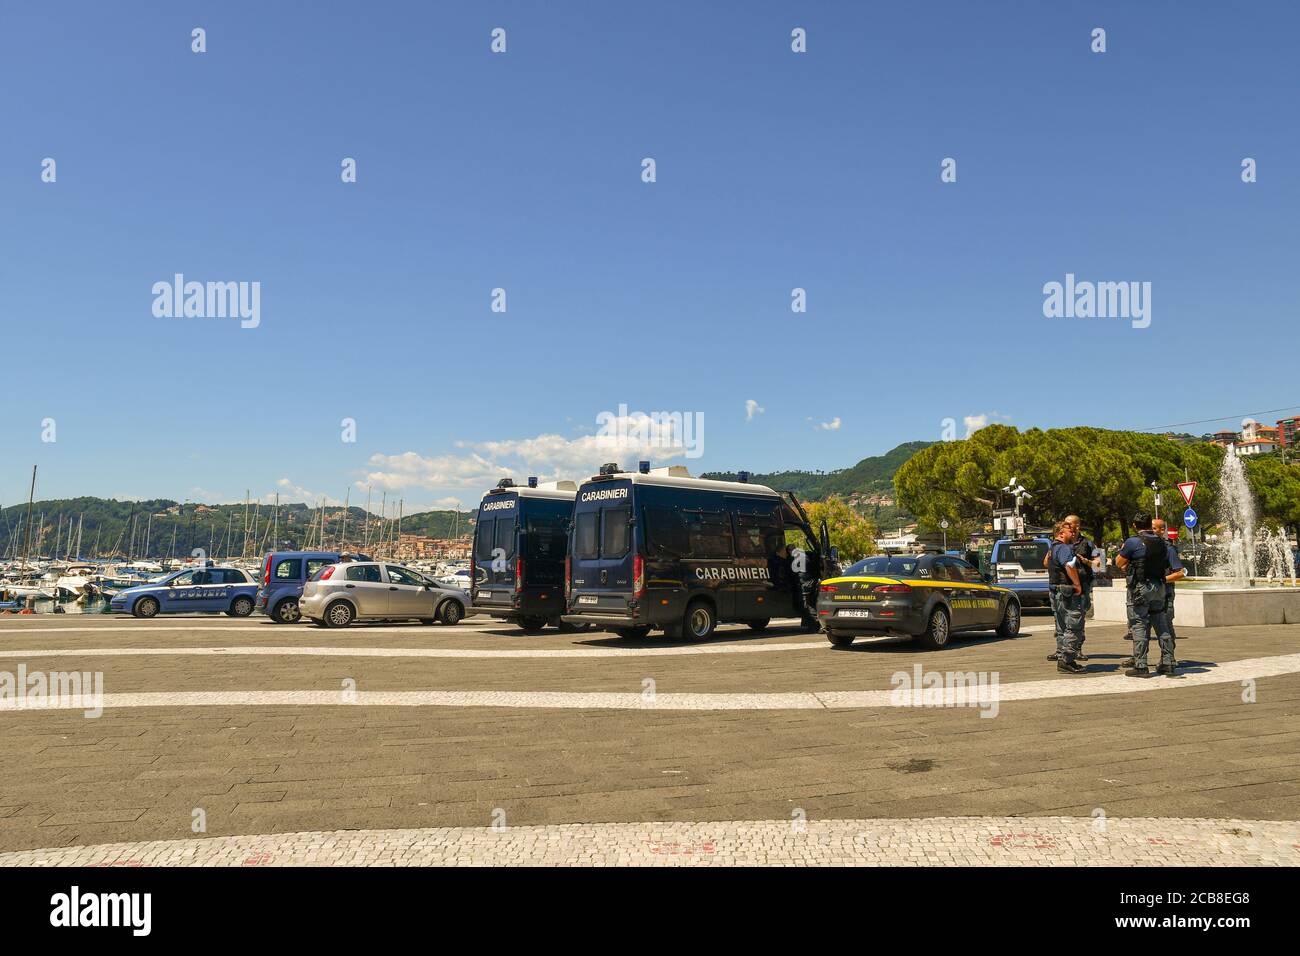 Veicoli di polizia italiani e un gruppo di poliziotti in attesa dell'arrivo del politico Matteo Salvini per un rally nella città marina di Lerici, Italia Foto Stock